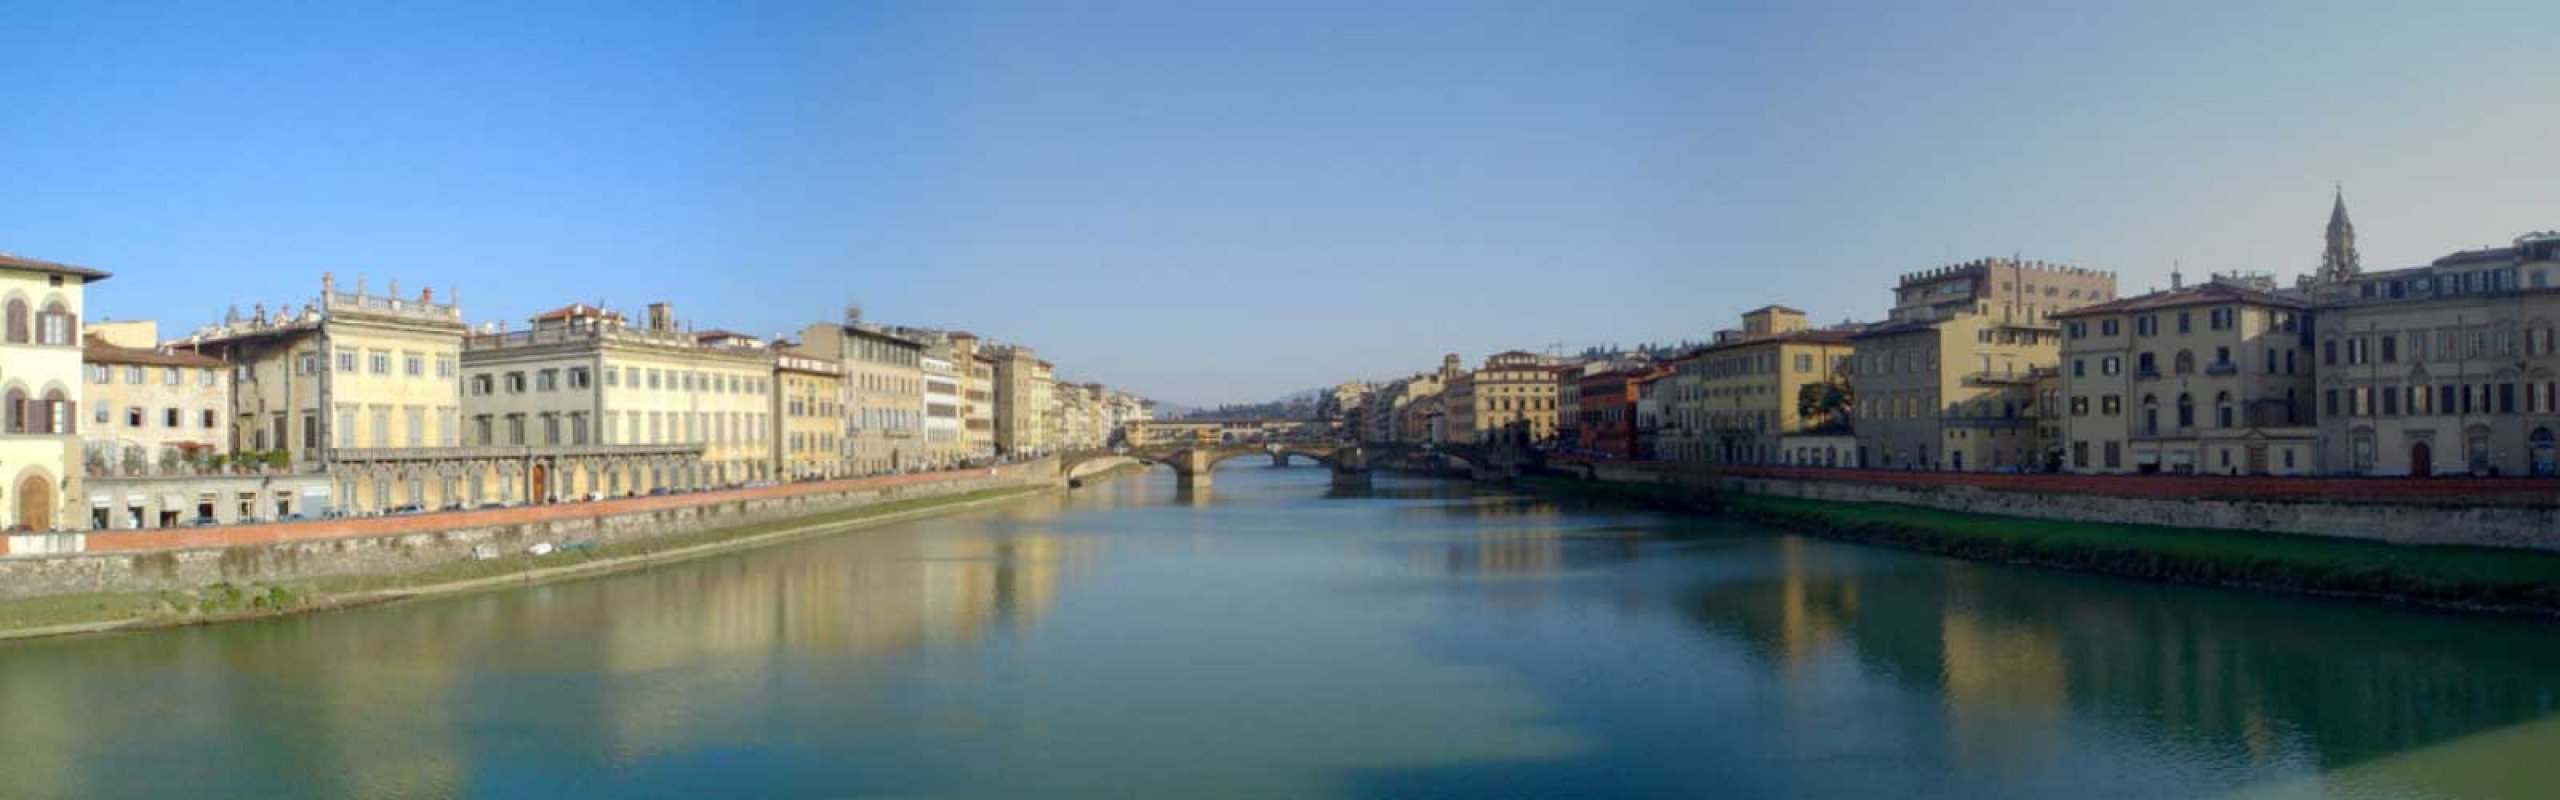 Bartolomeo Ammannati e le sue costruzioni a Firenze